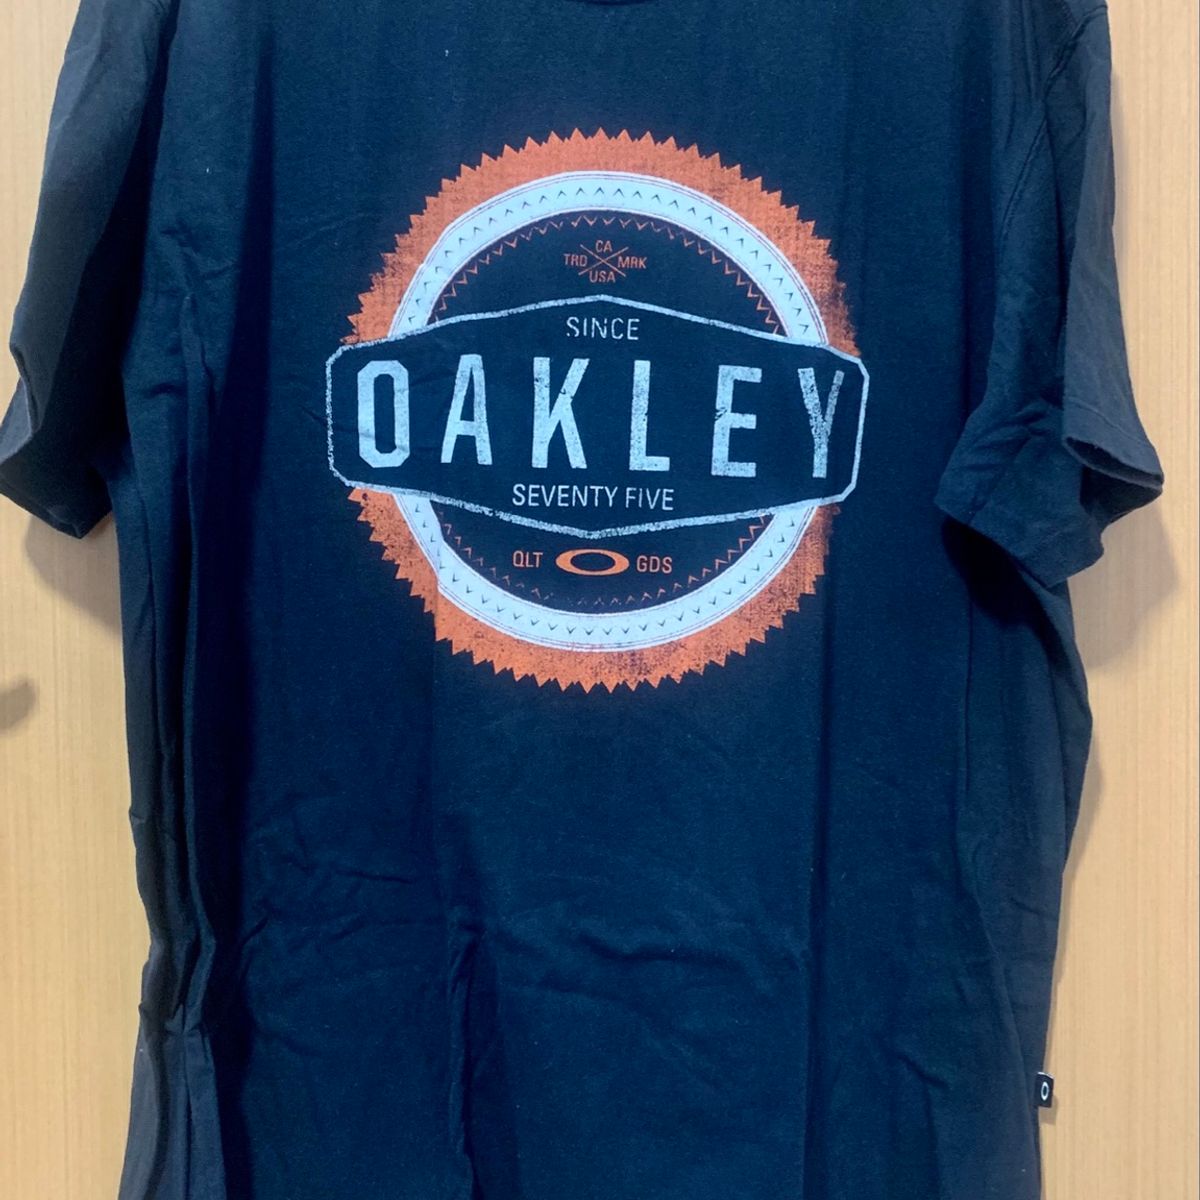 Camiseta Oakley Azul, Camiseta Feminina Oakley Usado 76612805, enjoei